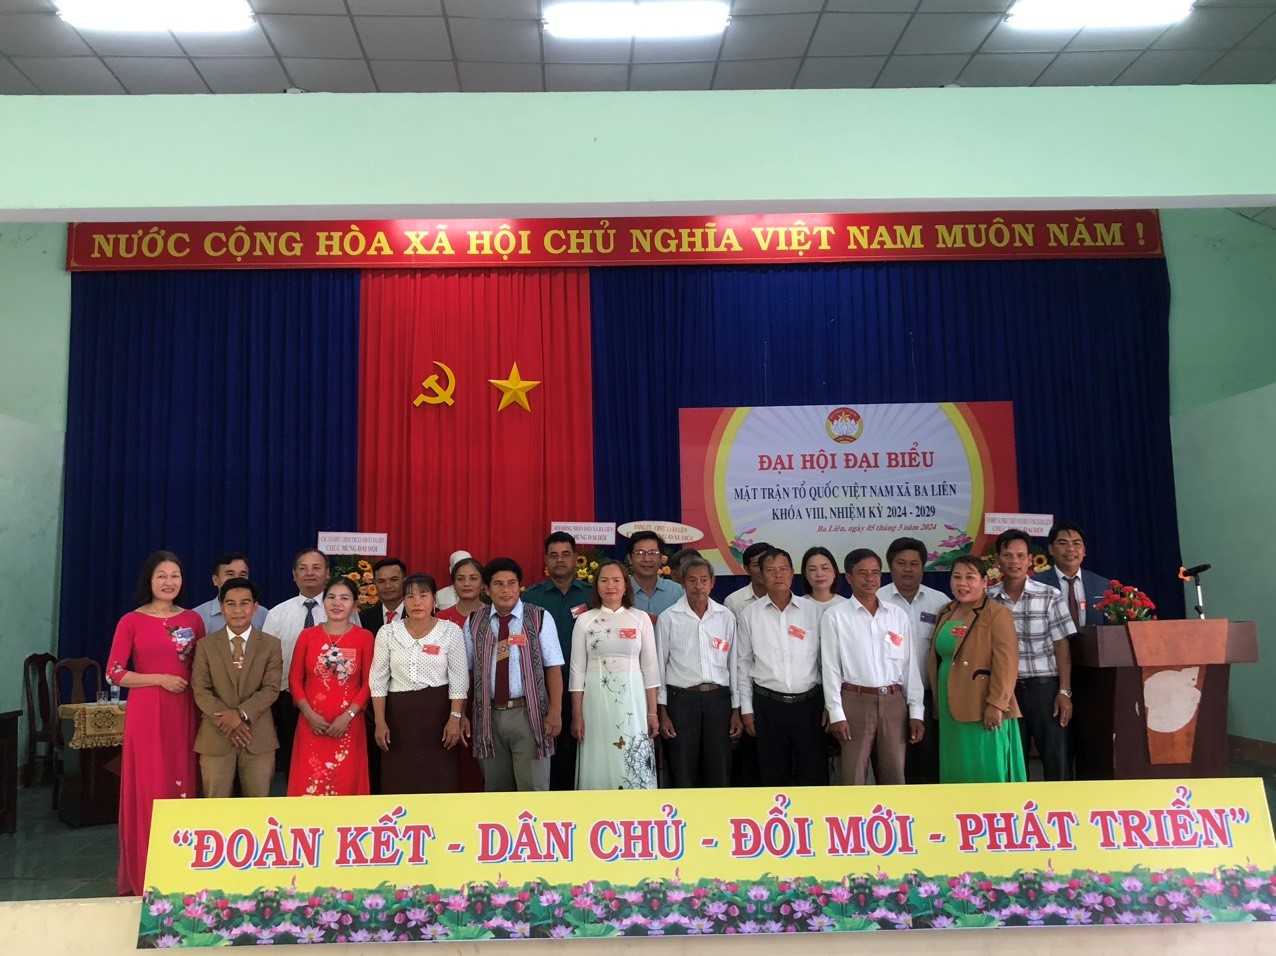 (Ủy viên Ủy ban Mặt trận Tổ quốc Việt Nam xã Ba Liên khóa VIII, nhiệm kỳ  2024 – 2029 chụp hình với các đồng chí đại biểu về tham dự đại hội)